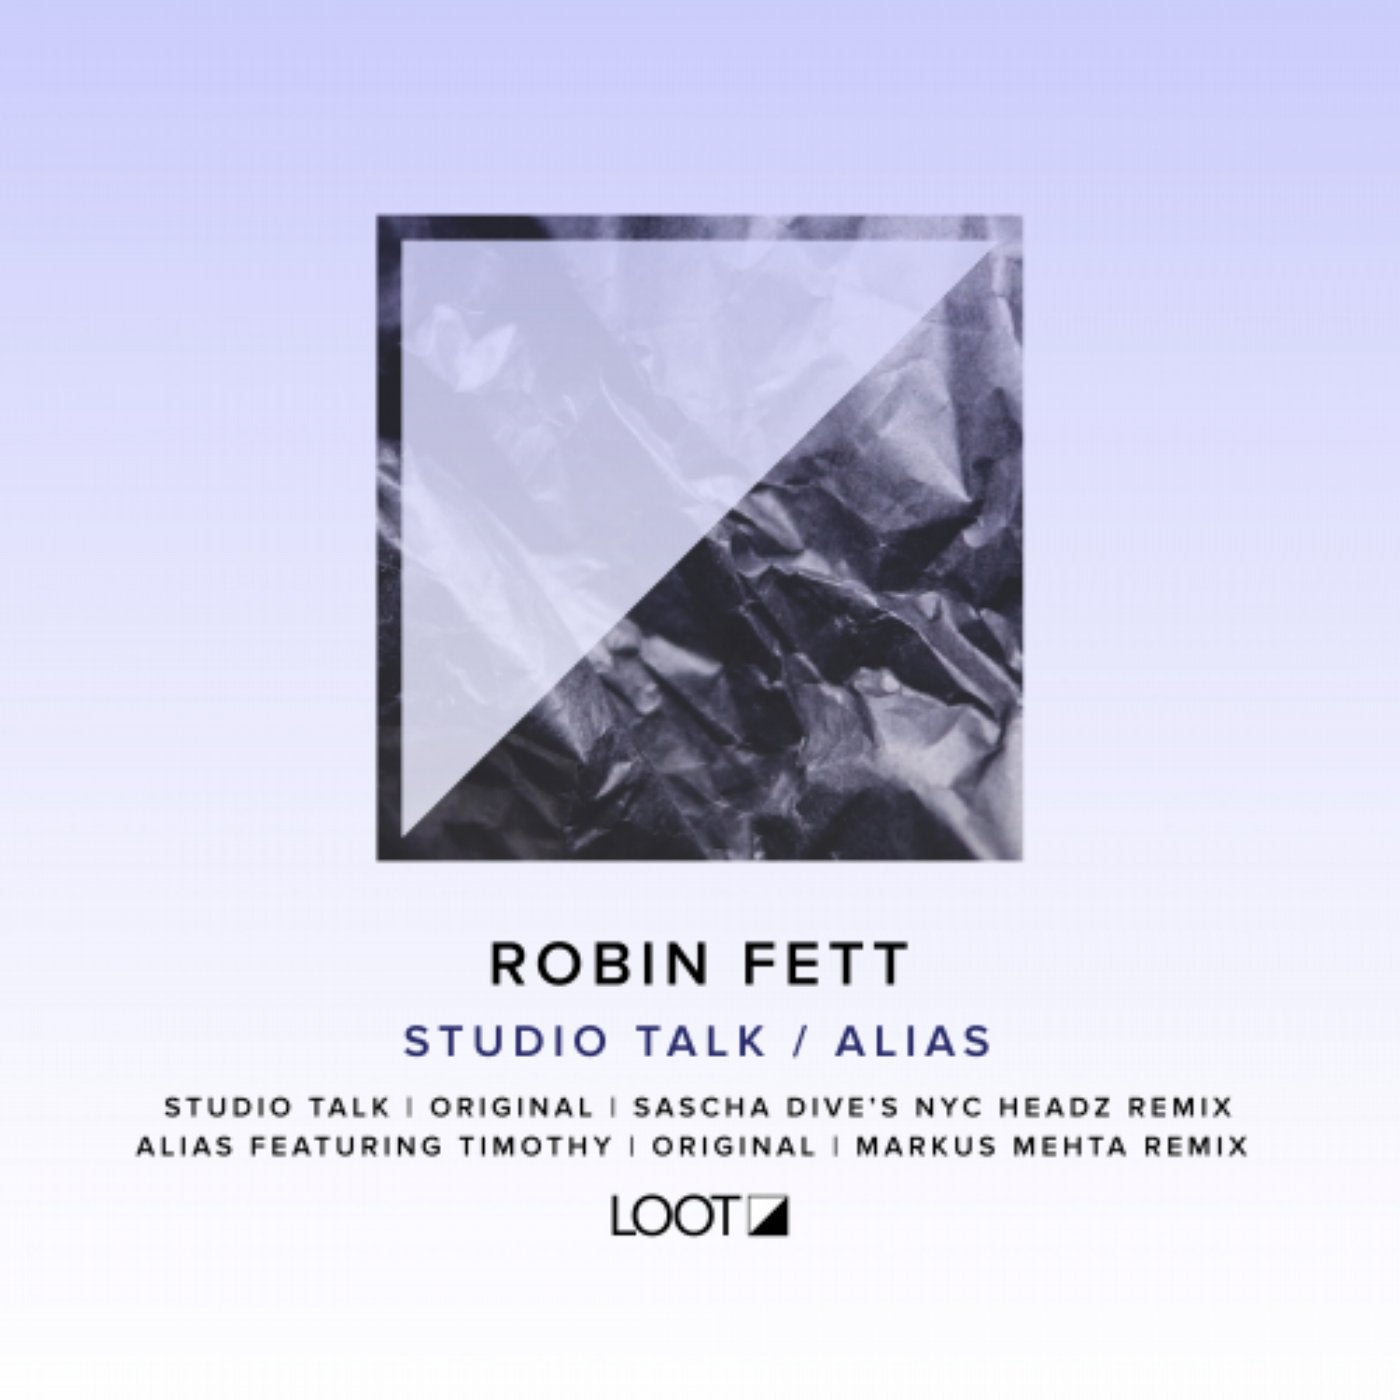 Studio Talk / Alias